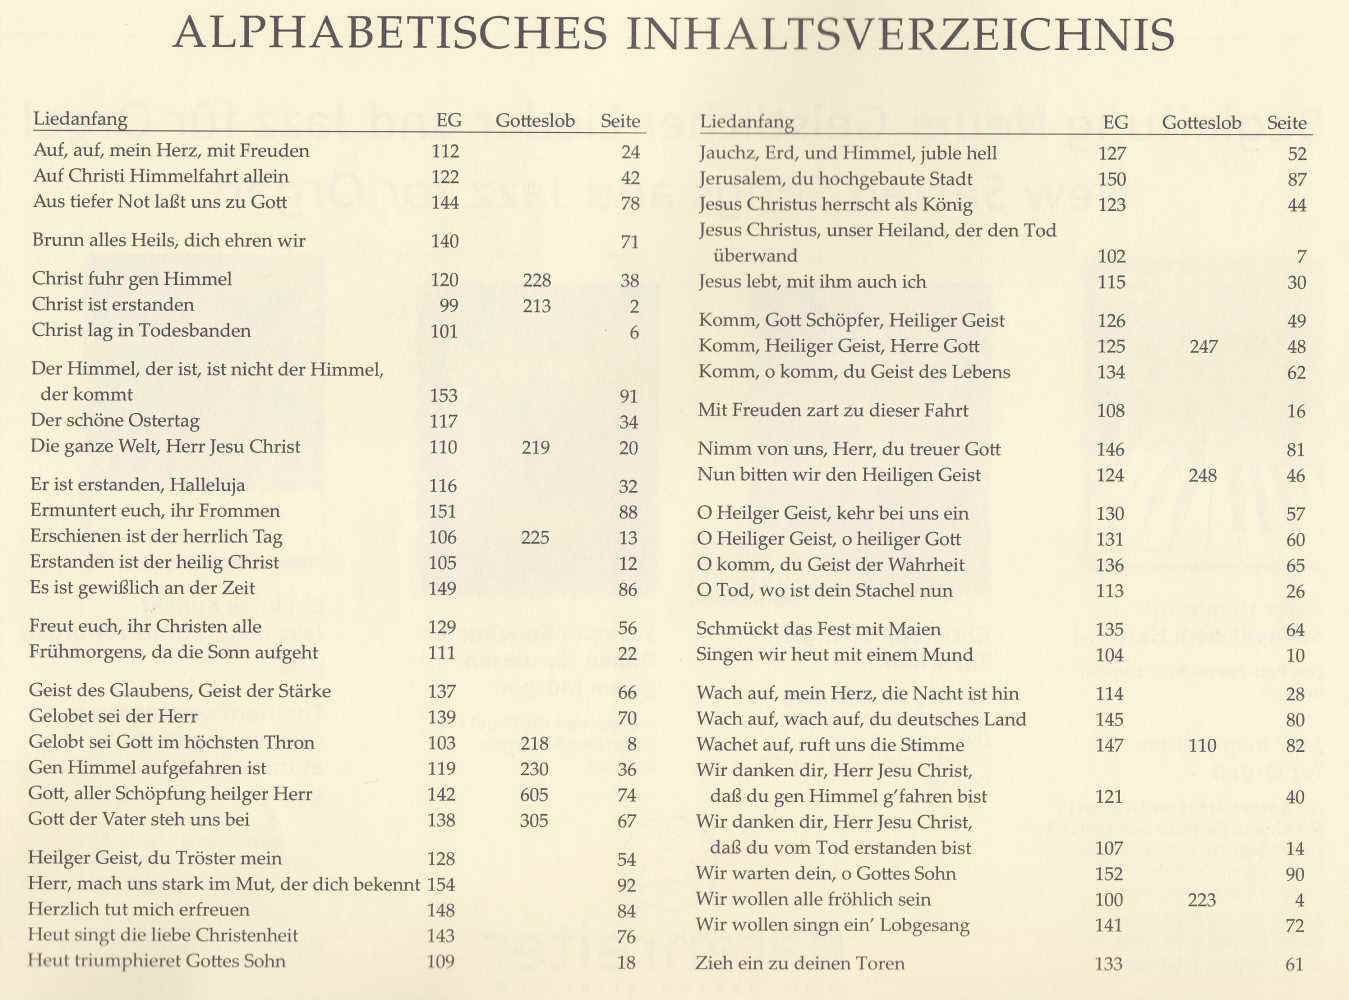 Noten Kleine Choralvorspiele & Begleitsätze Bärenreiter BA 9273 für Orgel organ